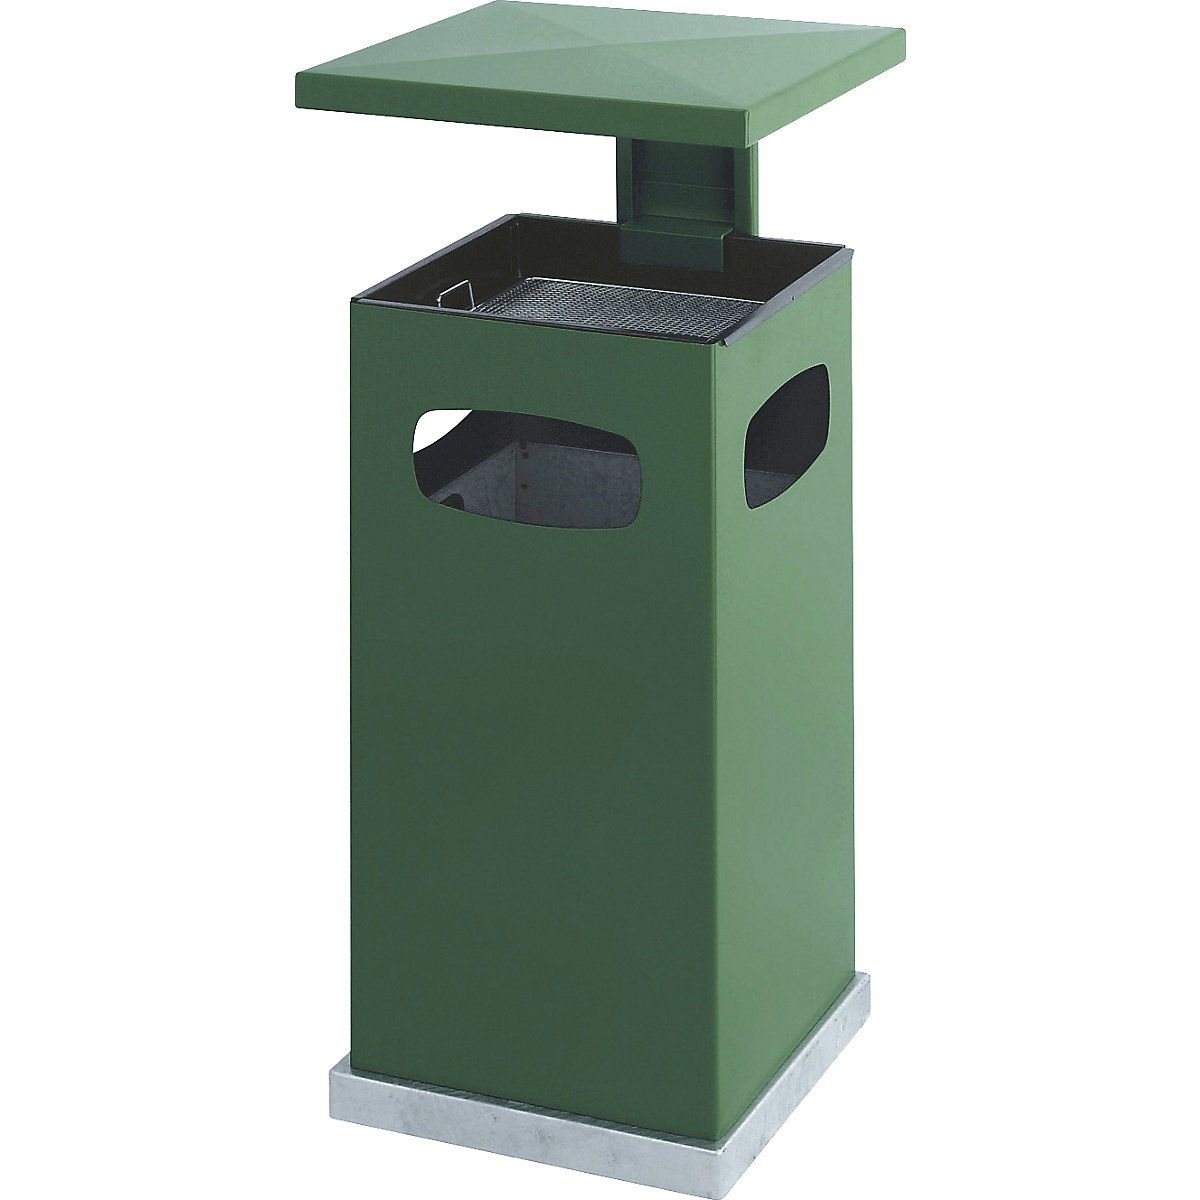 Coletor de lixo com aplique de cinzeiro e telhado de proteção, capacidade 38 l, LxAxP 395 x 910 x 395 mm, verde musgo-5